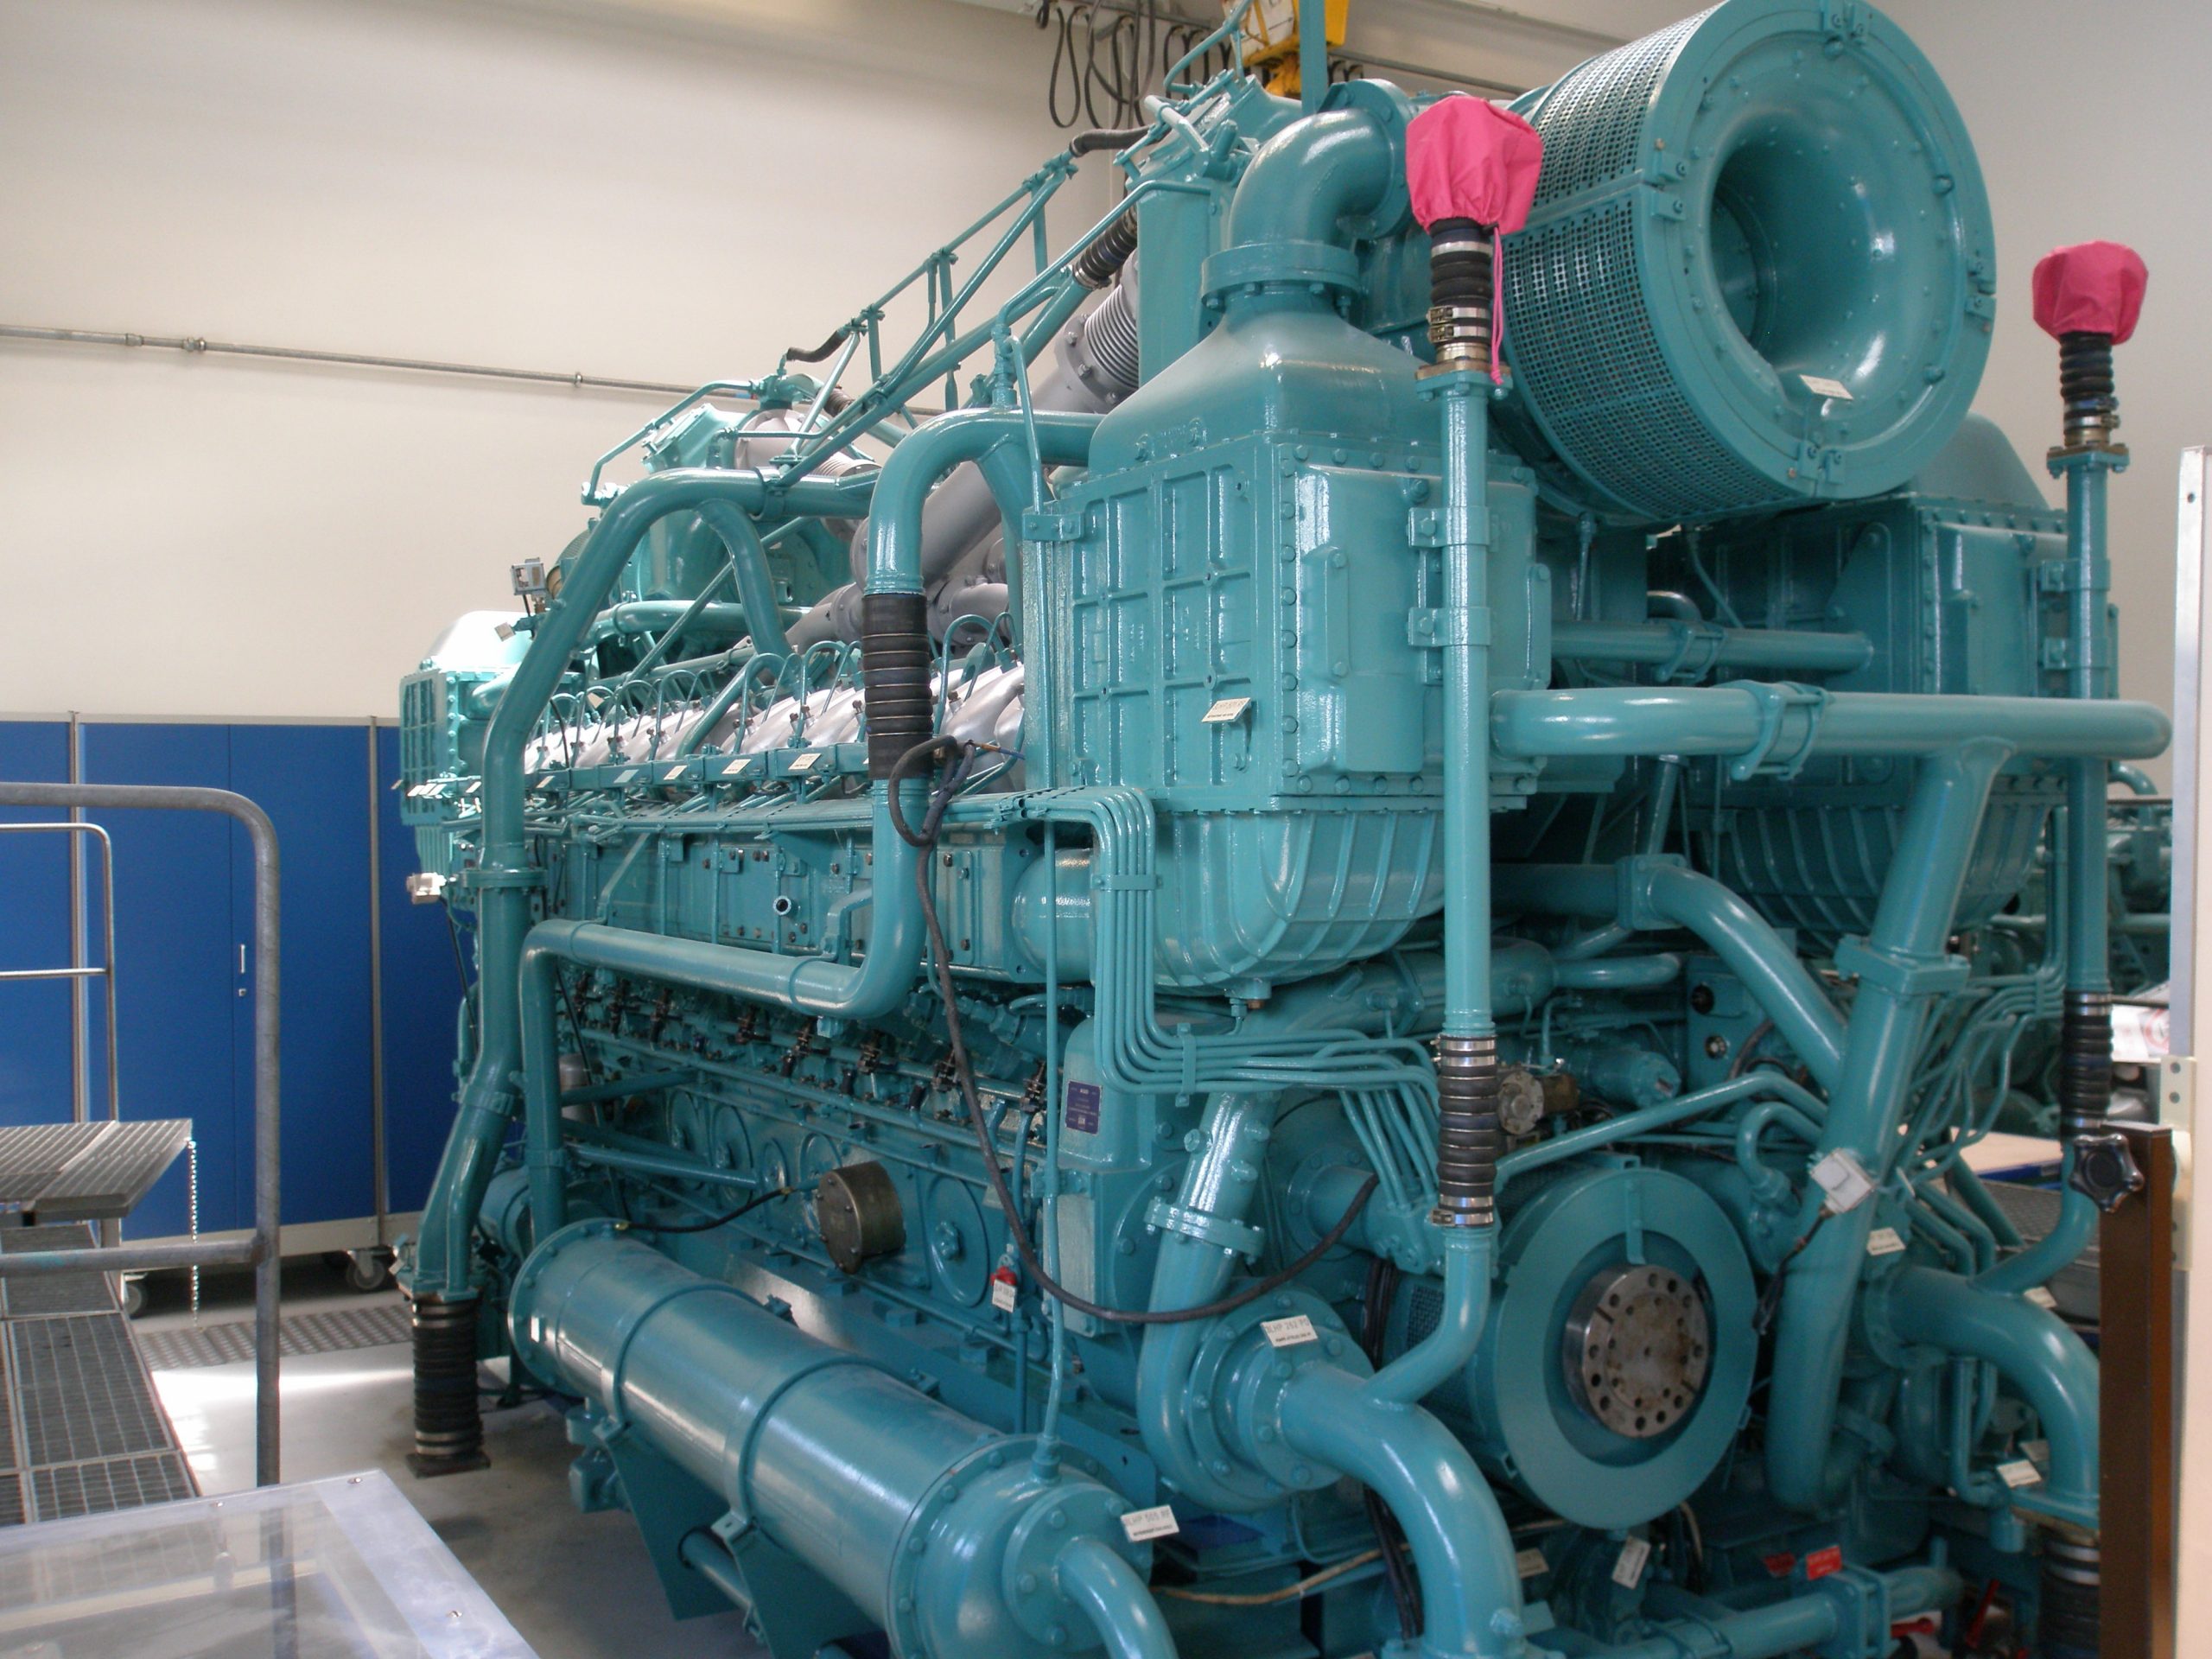 Entretien et réparation de moteurs iveco ftp cnh industriels GE GMP marine Rhône Alpes